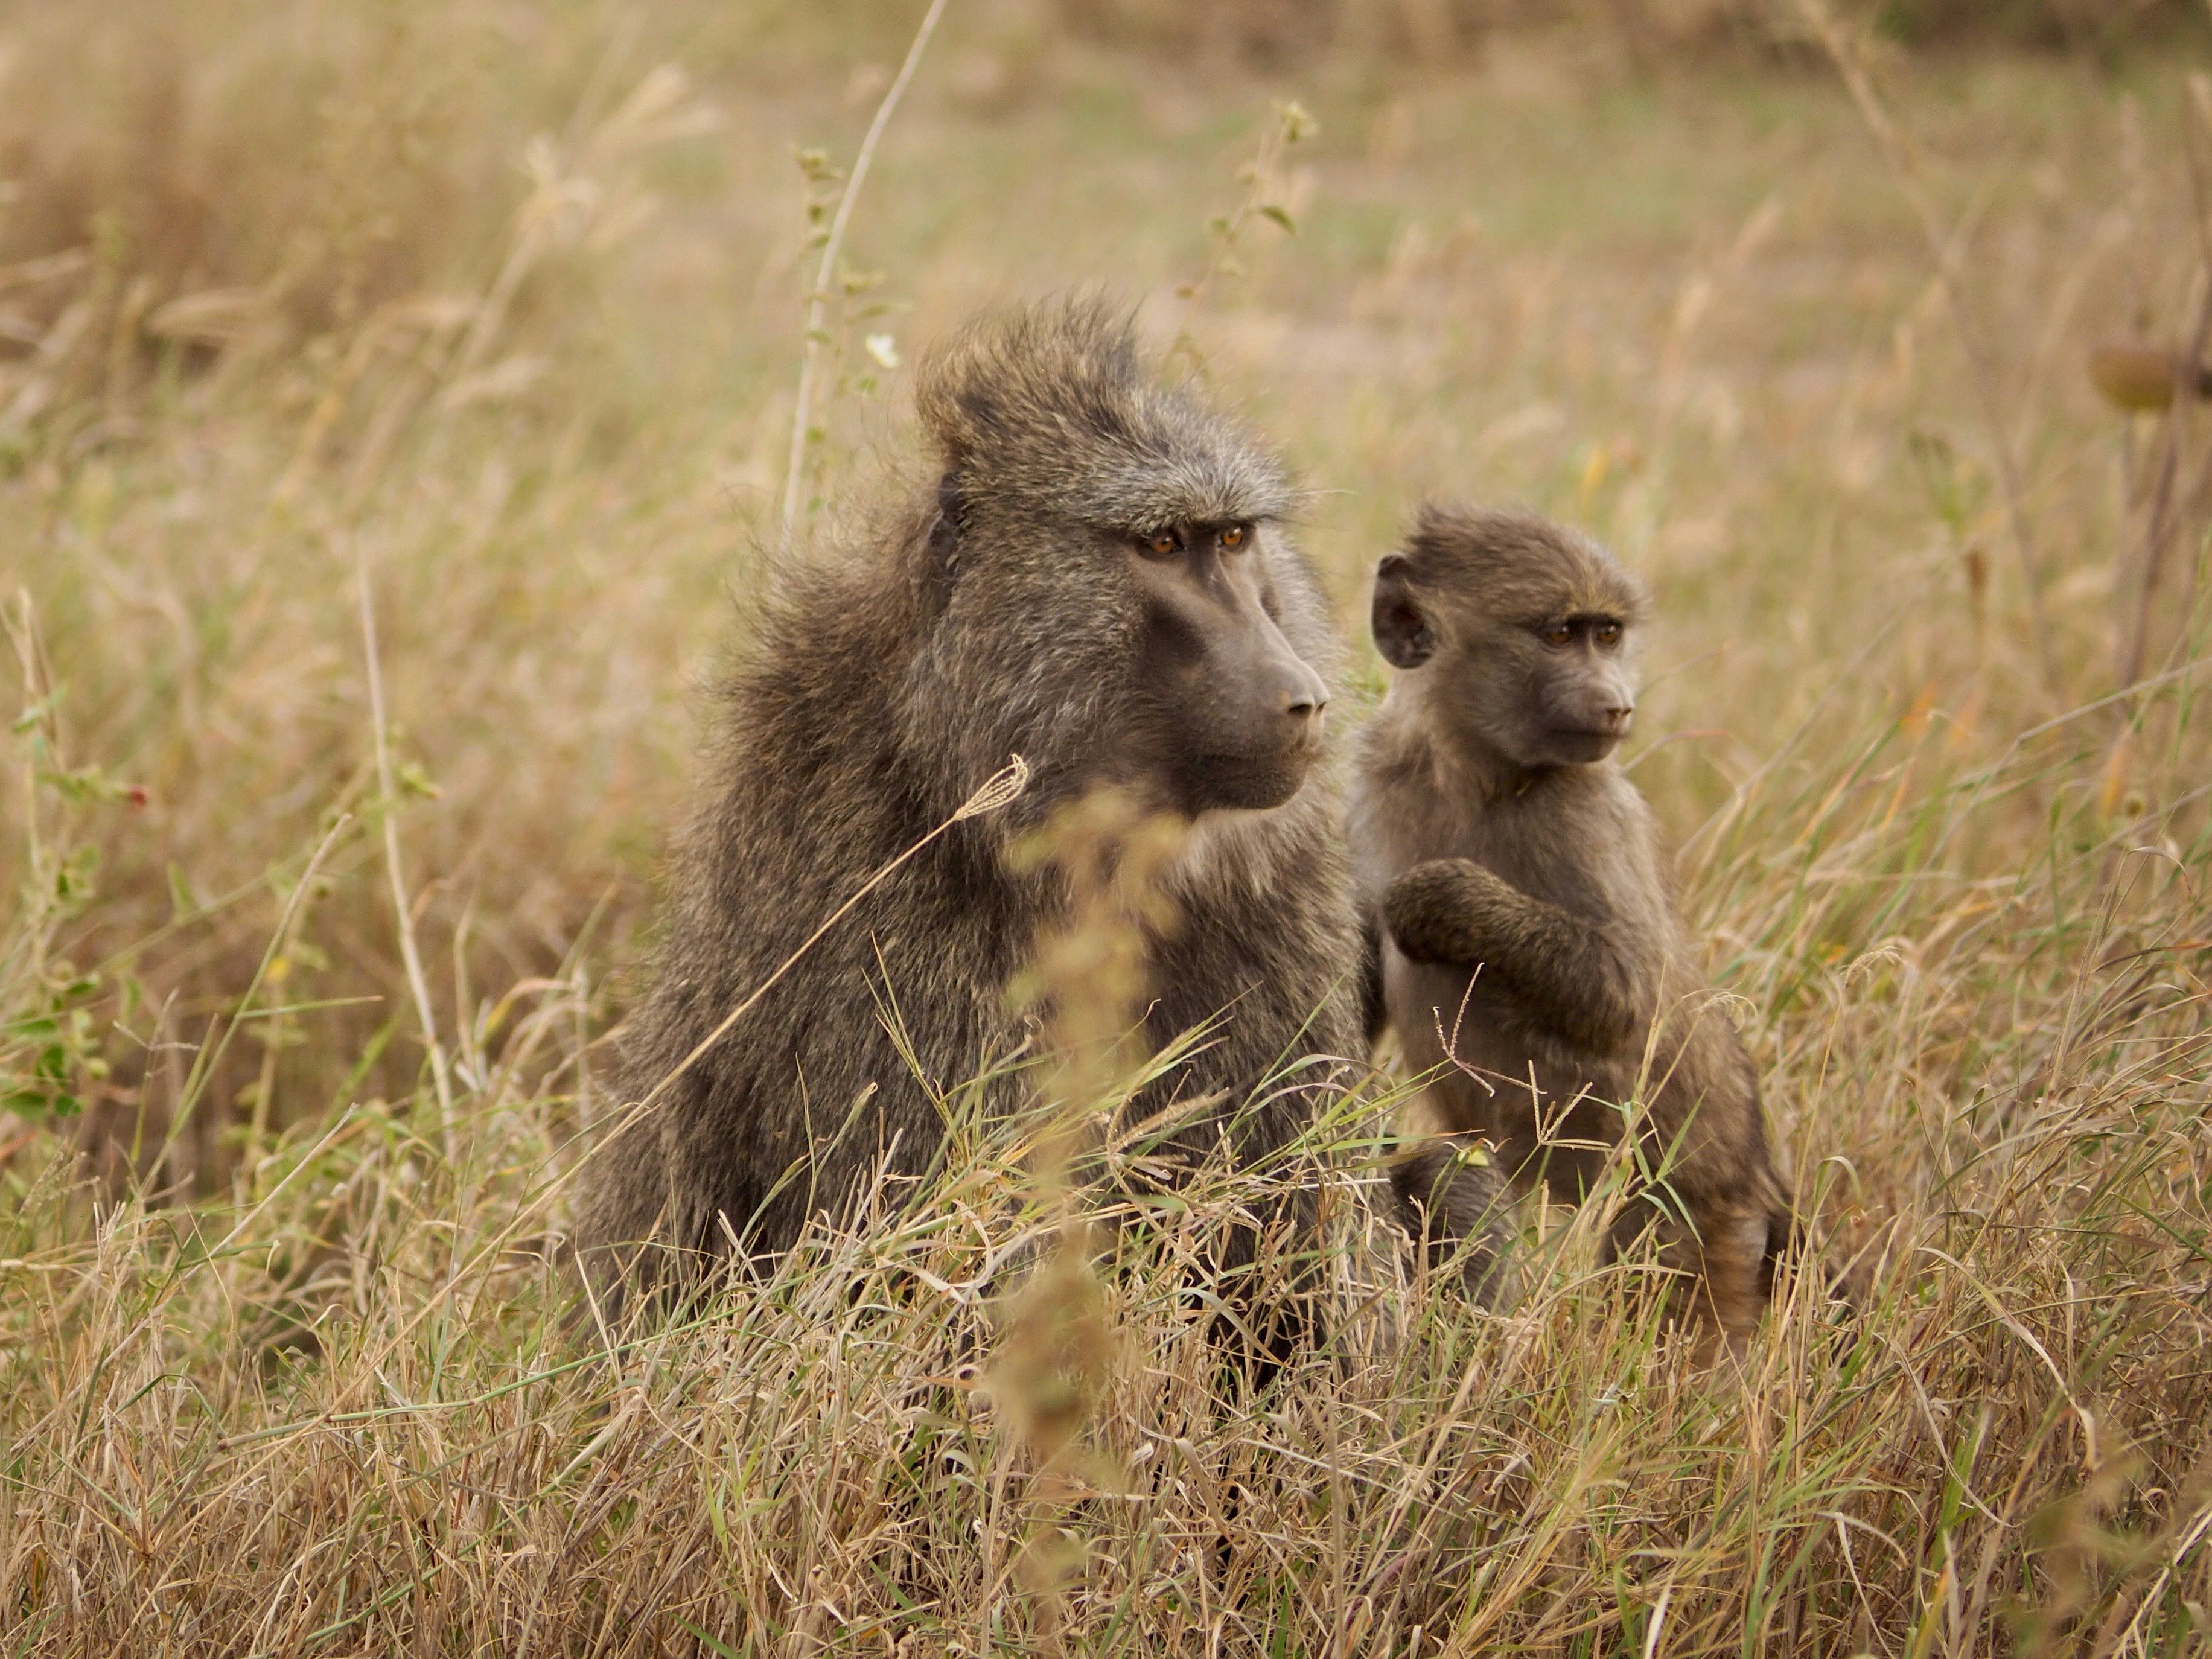 Mom and son baboons at Serengeti National Park savanna - Tanzania